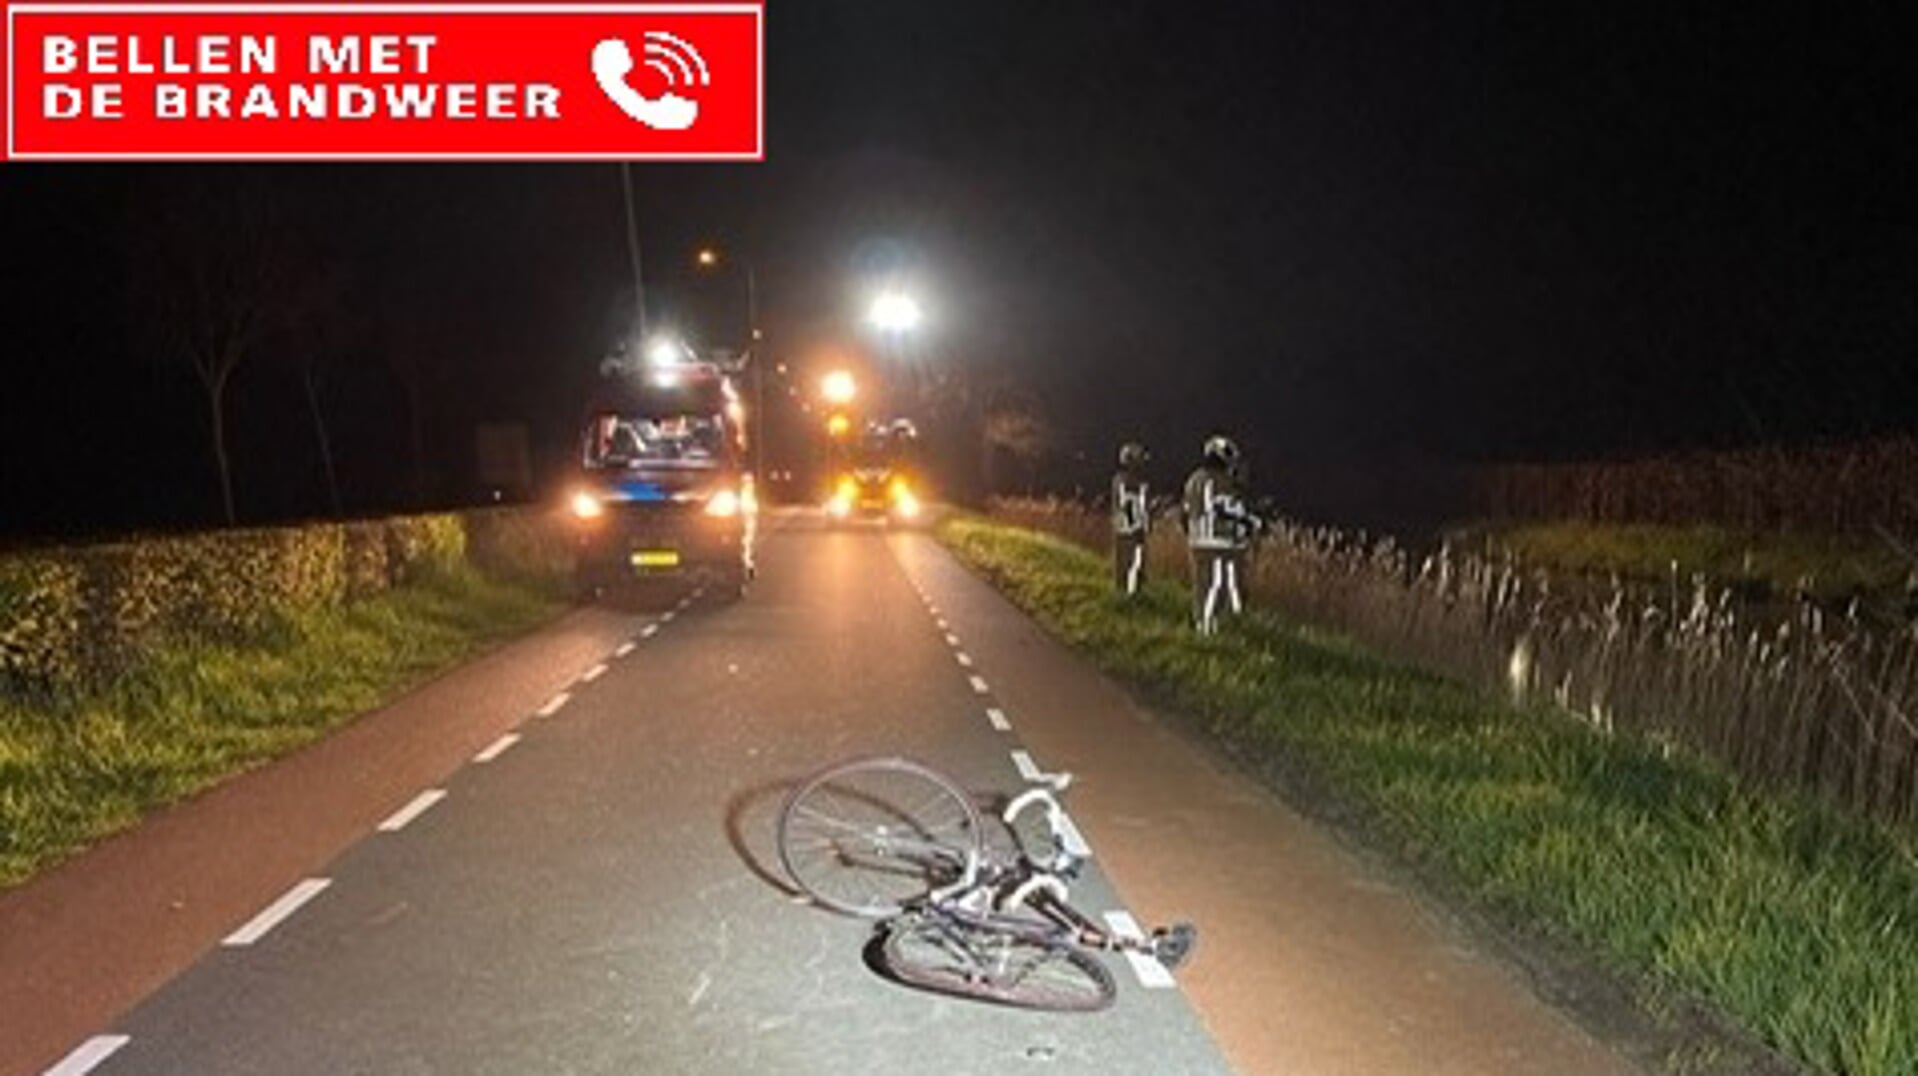 Zaterdag 15 april voor middernacht een uitruk vanwege een gehavende fiets op de ventweg.